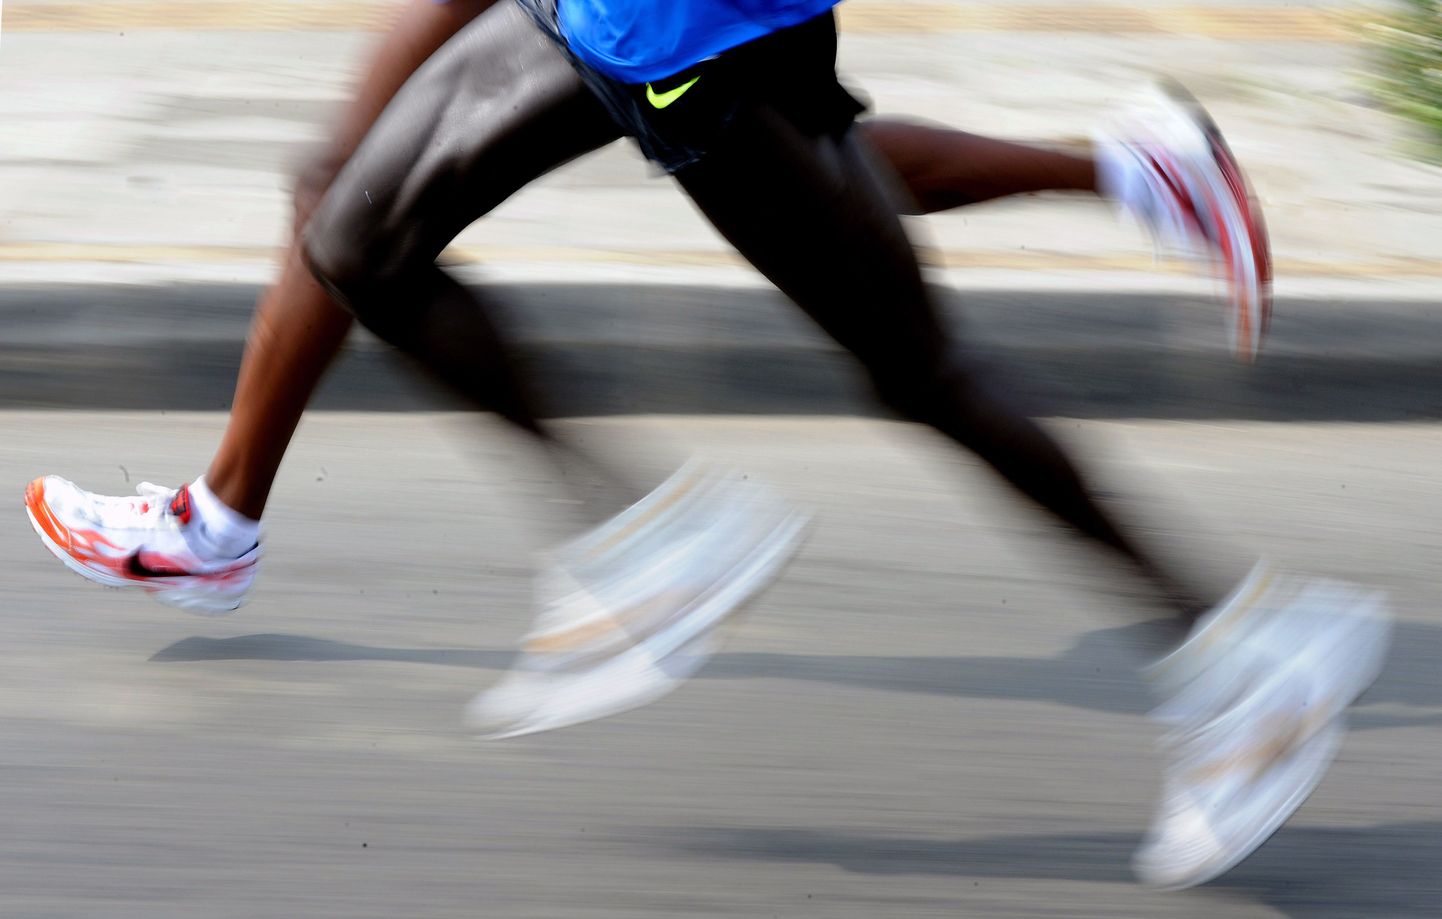 Venitusharjutused ei aita jooksuvigastusi ennetada